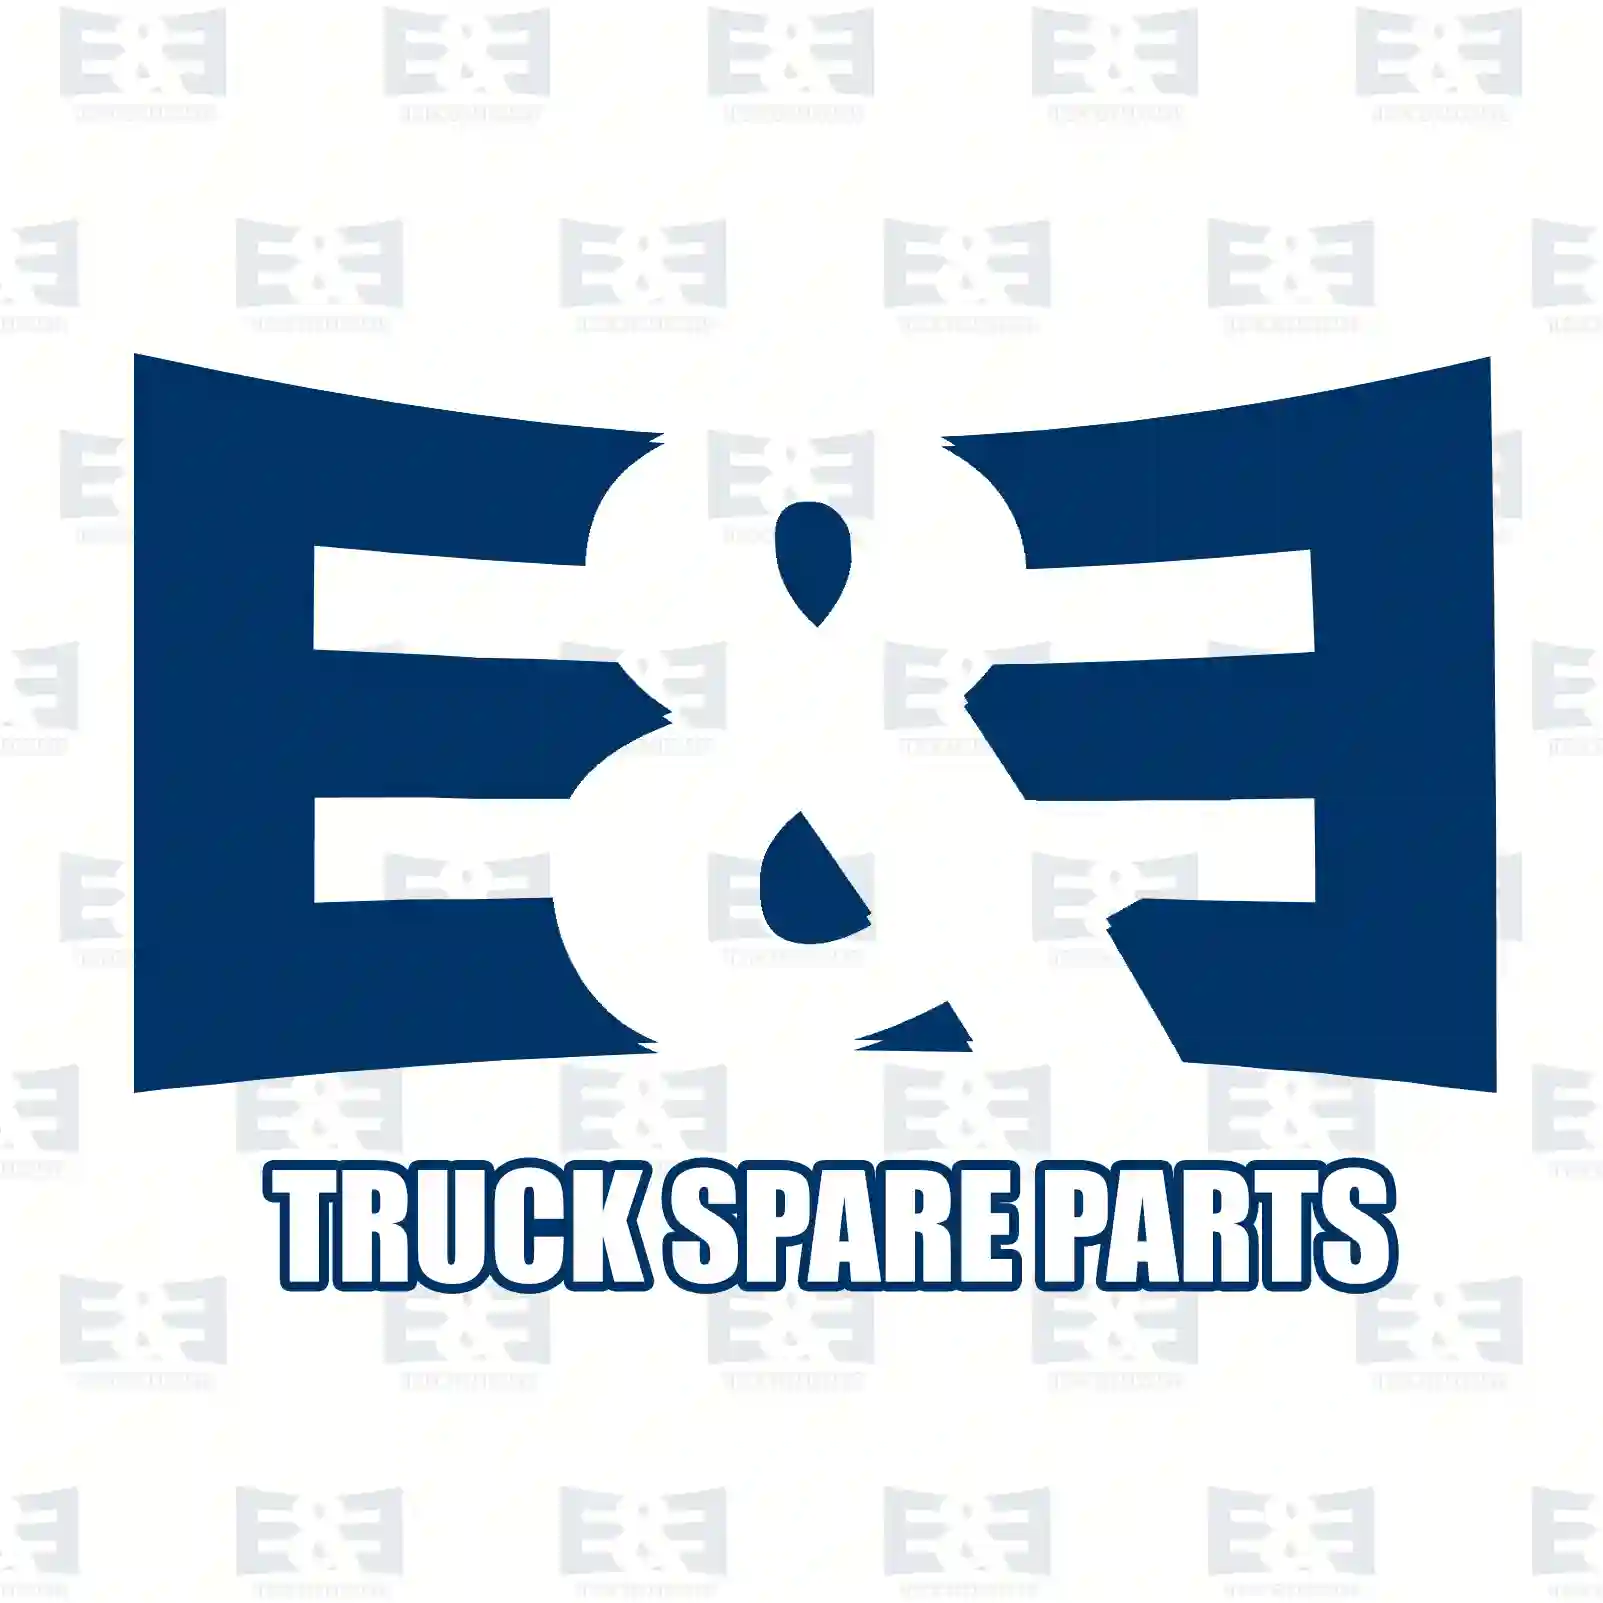 Step well case, left, 2E2292876, 81615100587, 81615100853, 81615100935 ||  2E2292876 E&E Truck Spare Parts | Truck Spare Parts, Auotomotive Spare Parts Step well case, left, 2E2292876, 81615100587, 81615100853, 81615100935 ||  2E2292876 E&E Truck Spare Parts | Truck Spare Parts, Auotomotive Spare Parts